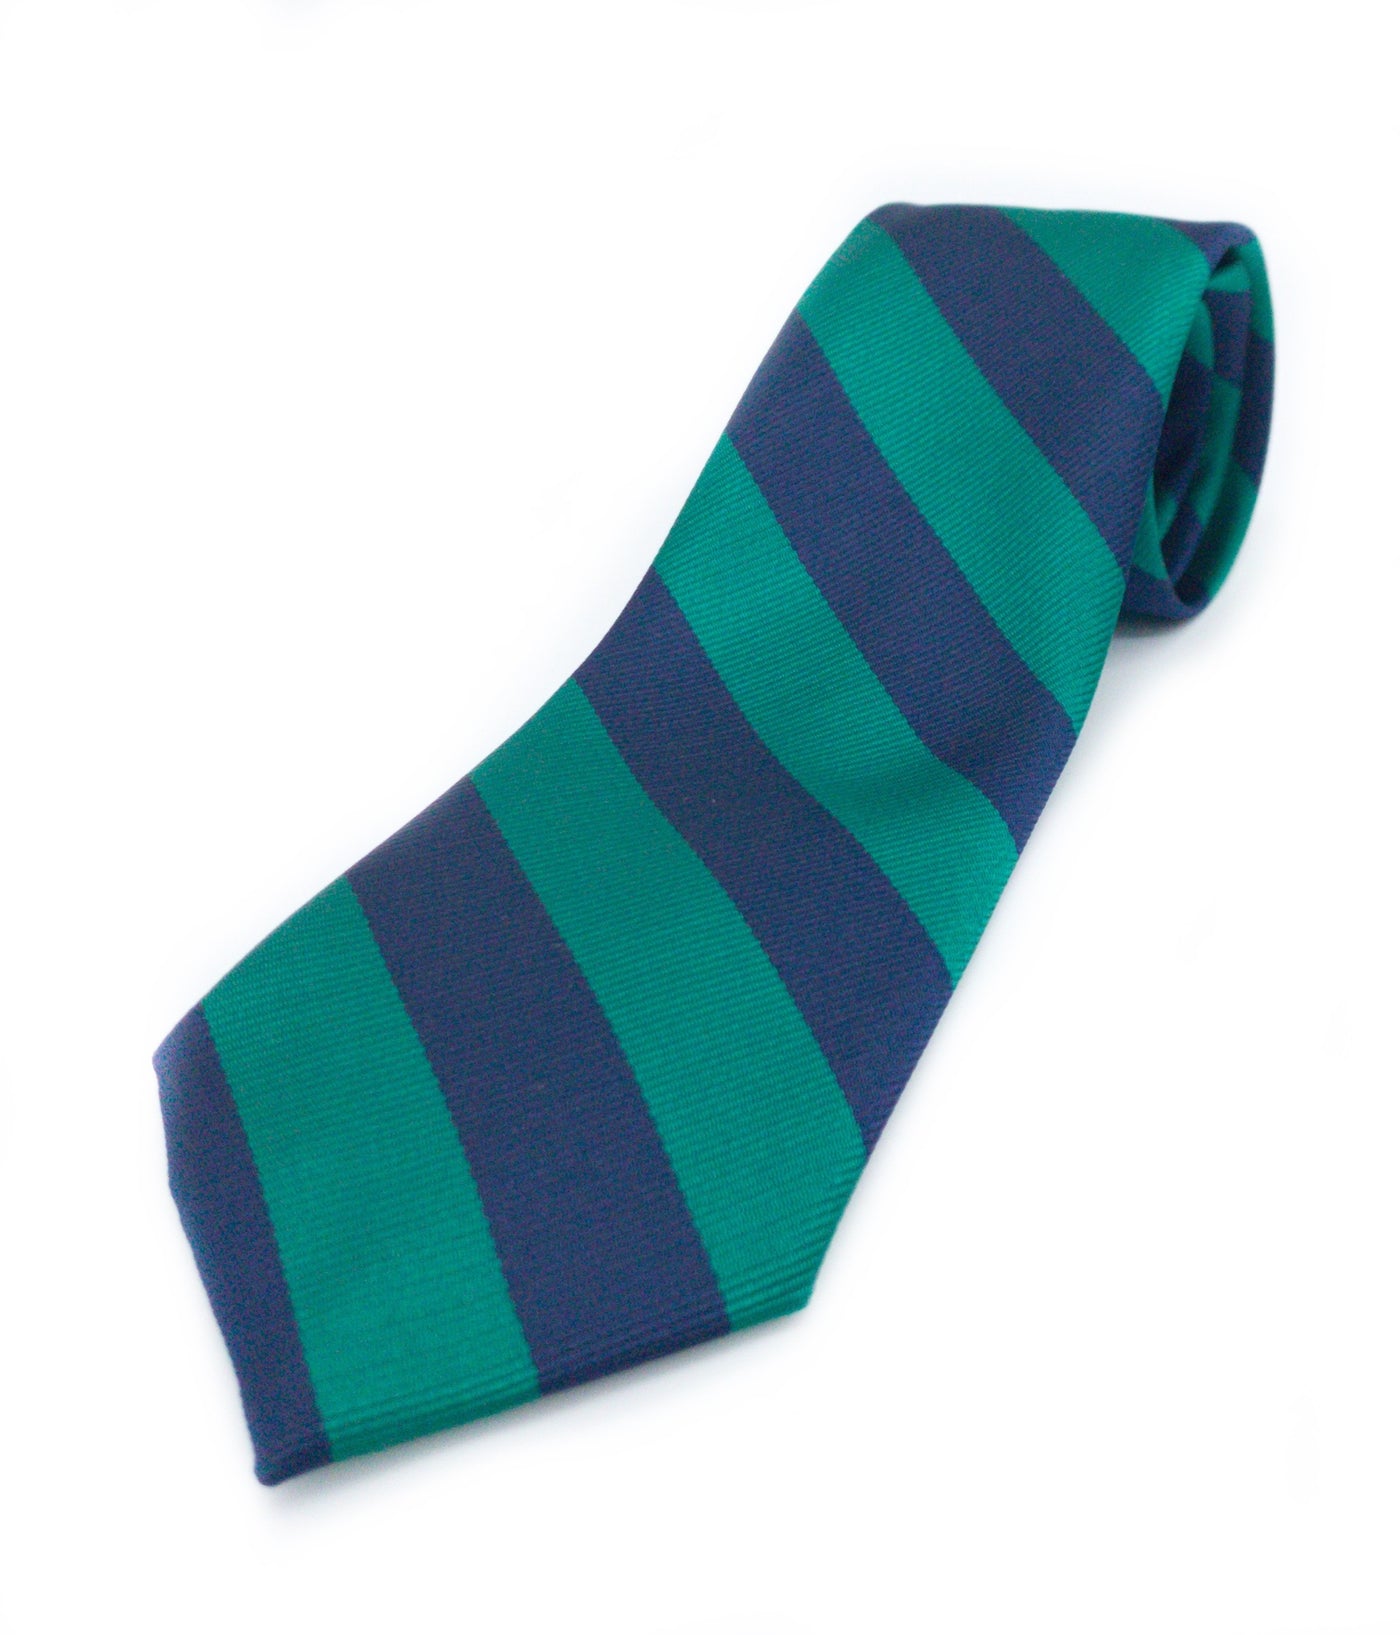 OHS tie/bow tie